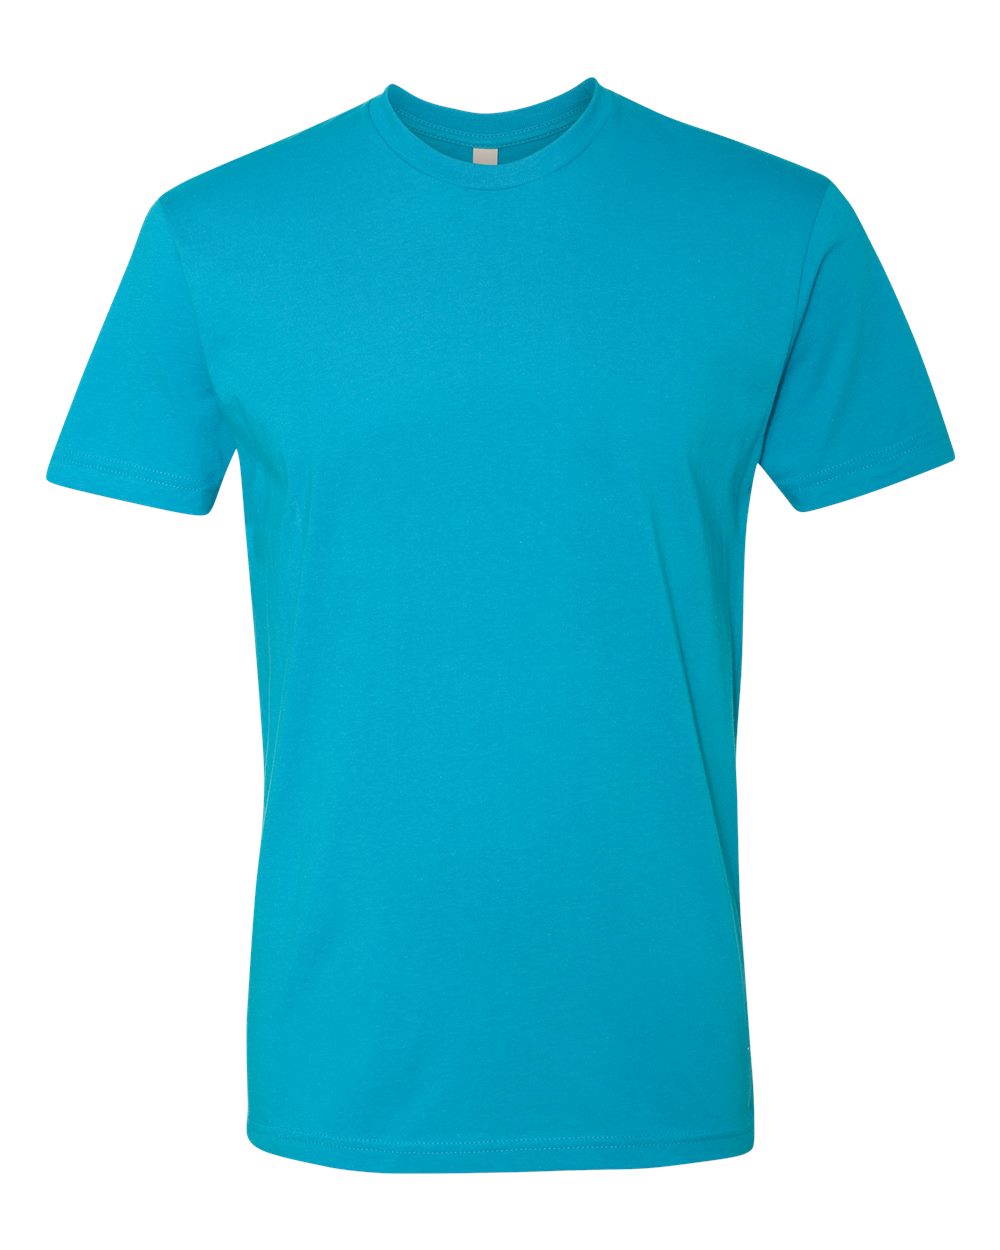 Next Level 3600 - Unisex Cotton T-Shirt $6.21 - T-Shirts